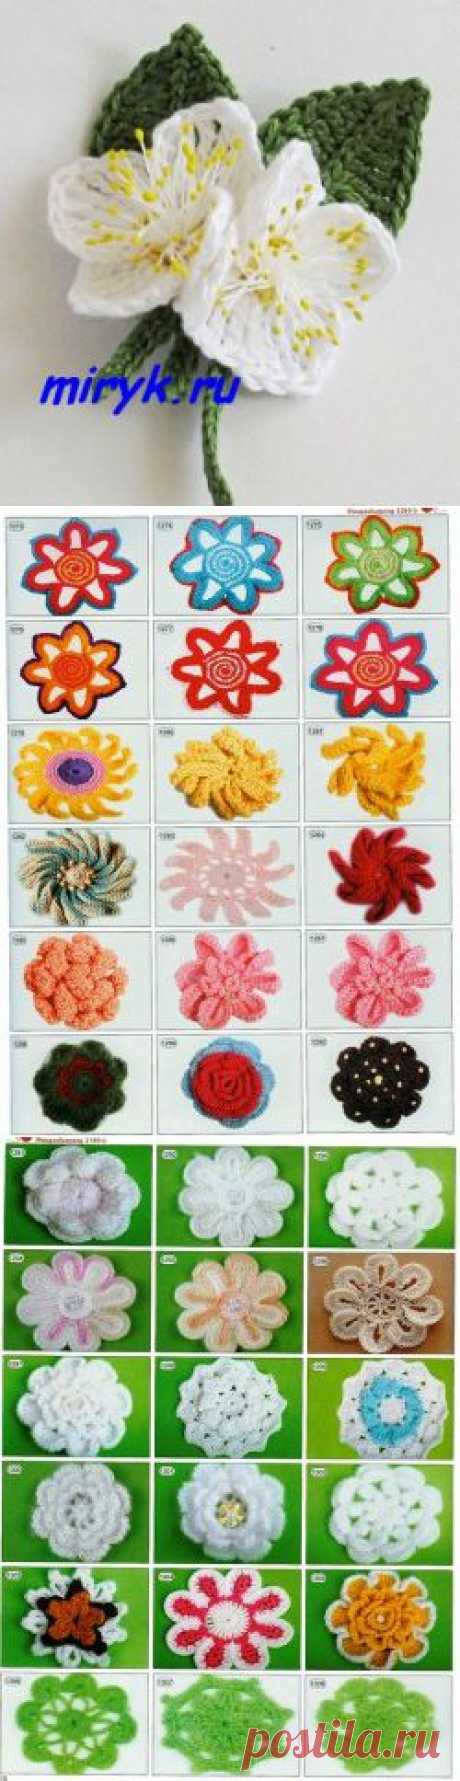 Вязаные цветы жасмина (мастер-класс+схемы) | вязание спицами схемы с описанием